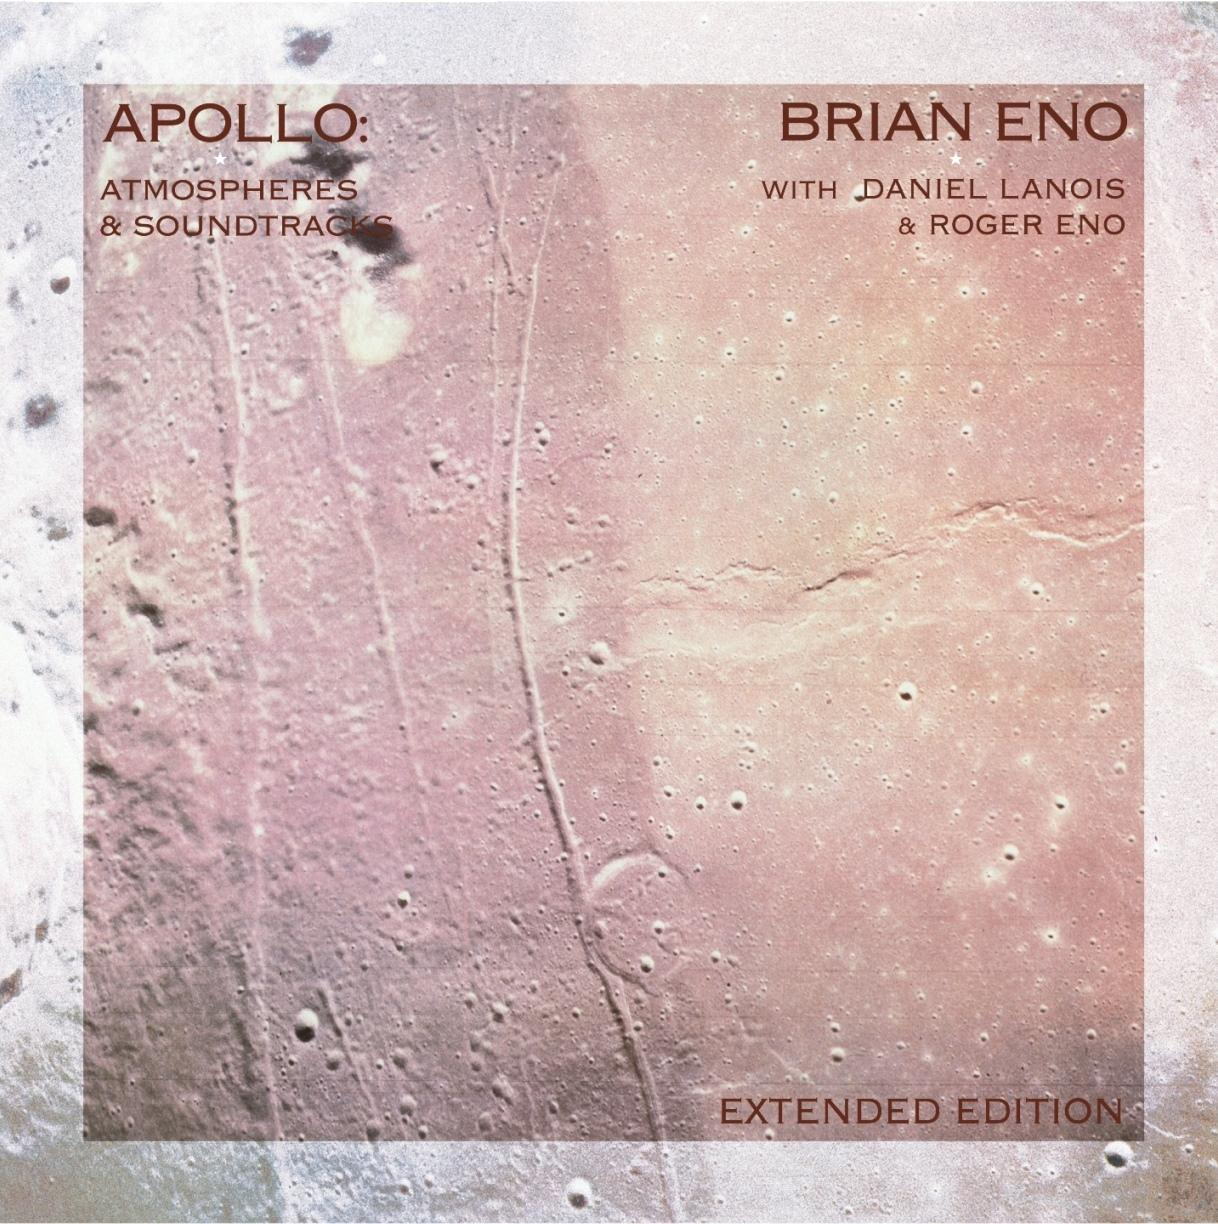 - (Vinyl) Atmospheres Brian Soundtracks Eno And - (Ltd.2LP) Apollo: